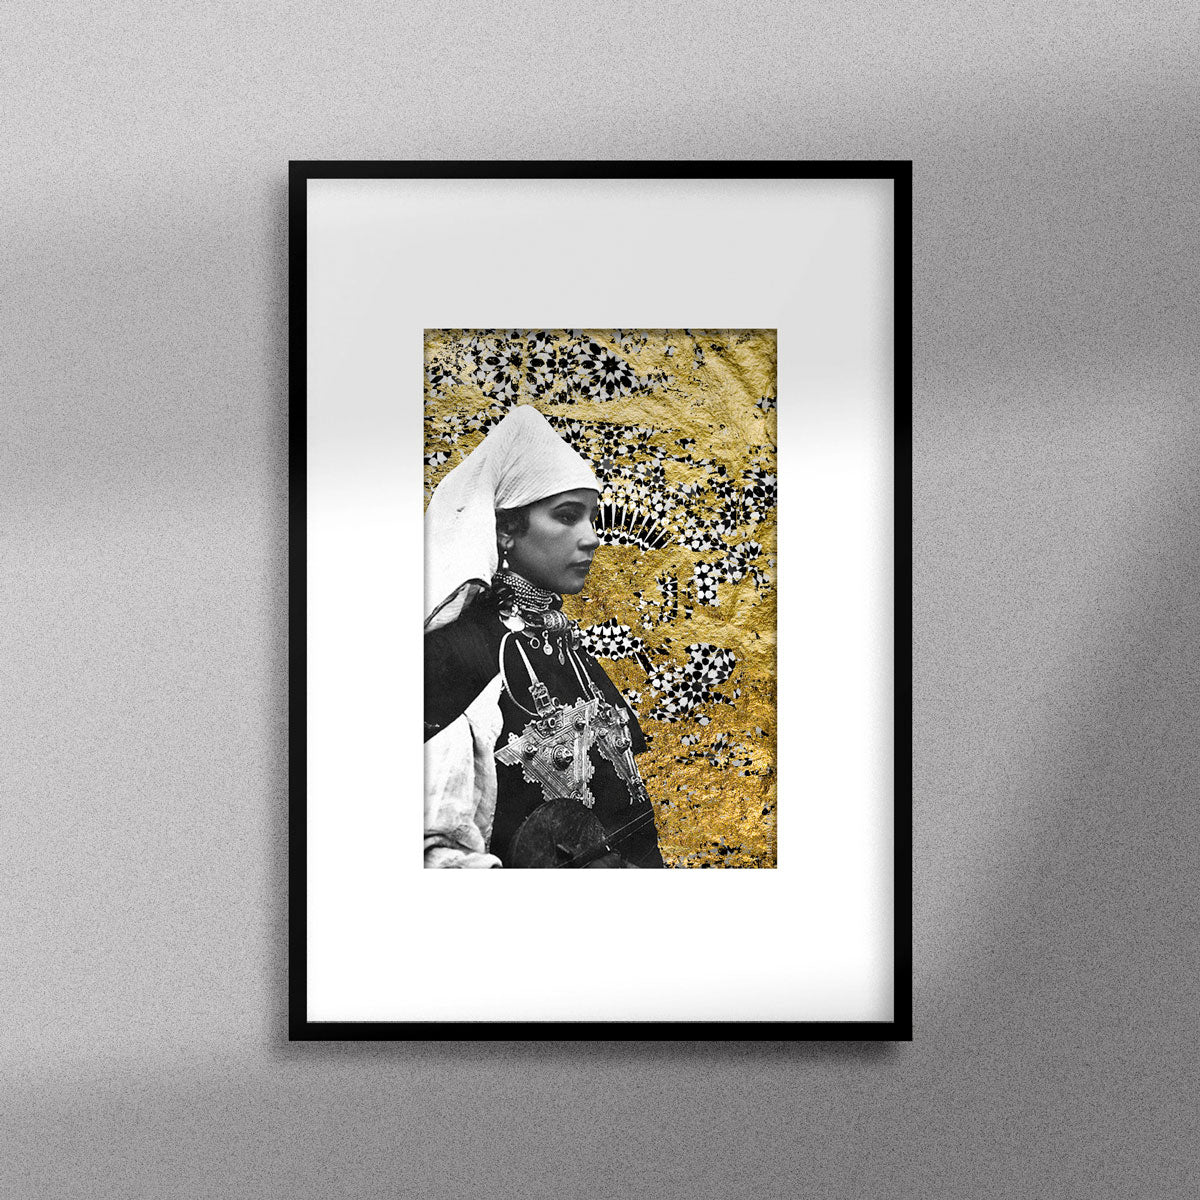 Tableau décoratif représentant un portrait d'une femme amazighe portant la fibule sur un fond de zellige marocain avec des feuilles d'or, encadré dans un cadre noir - Format A4.